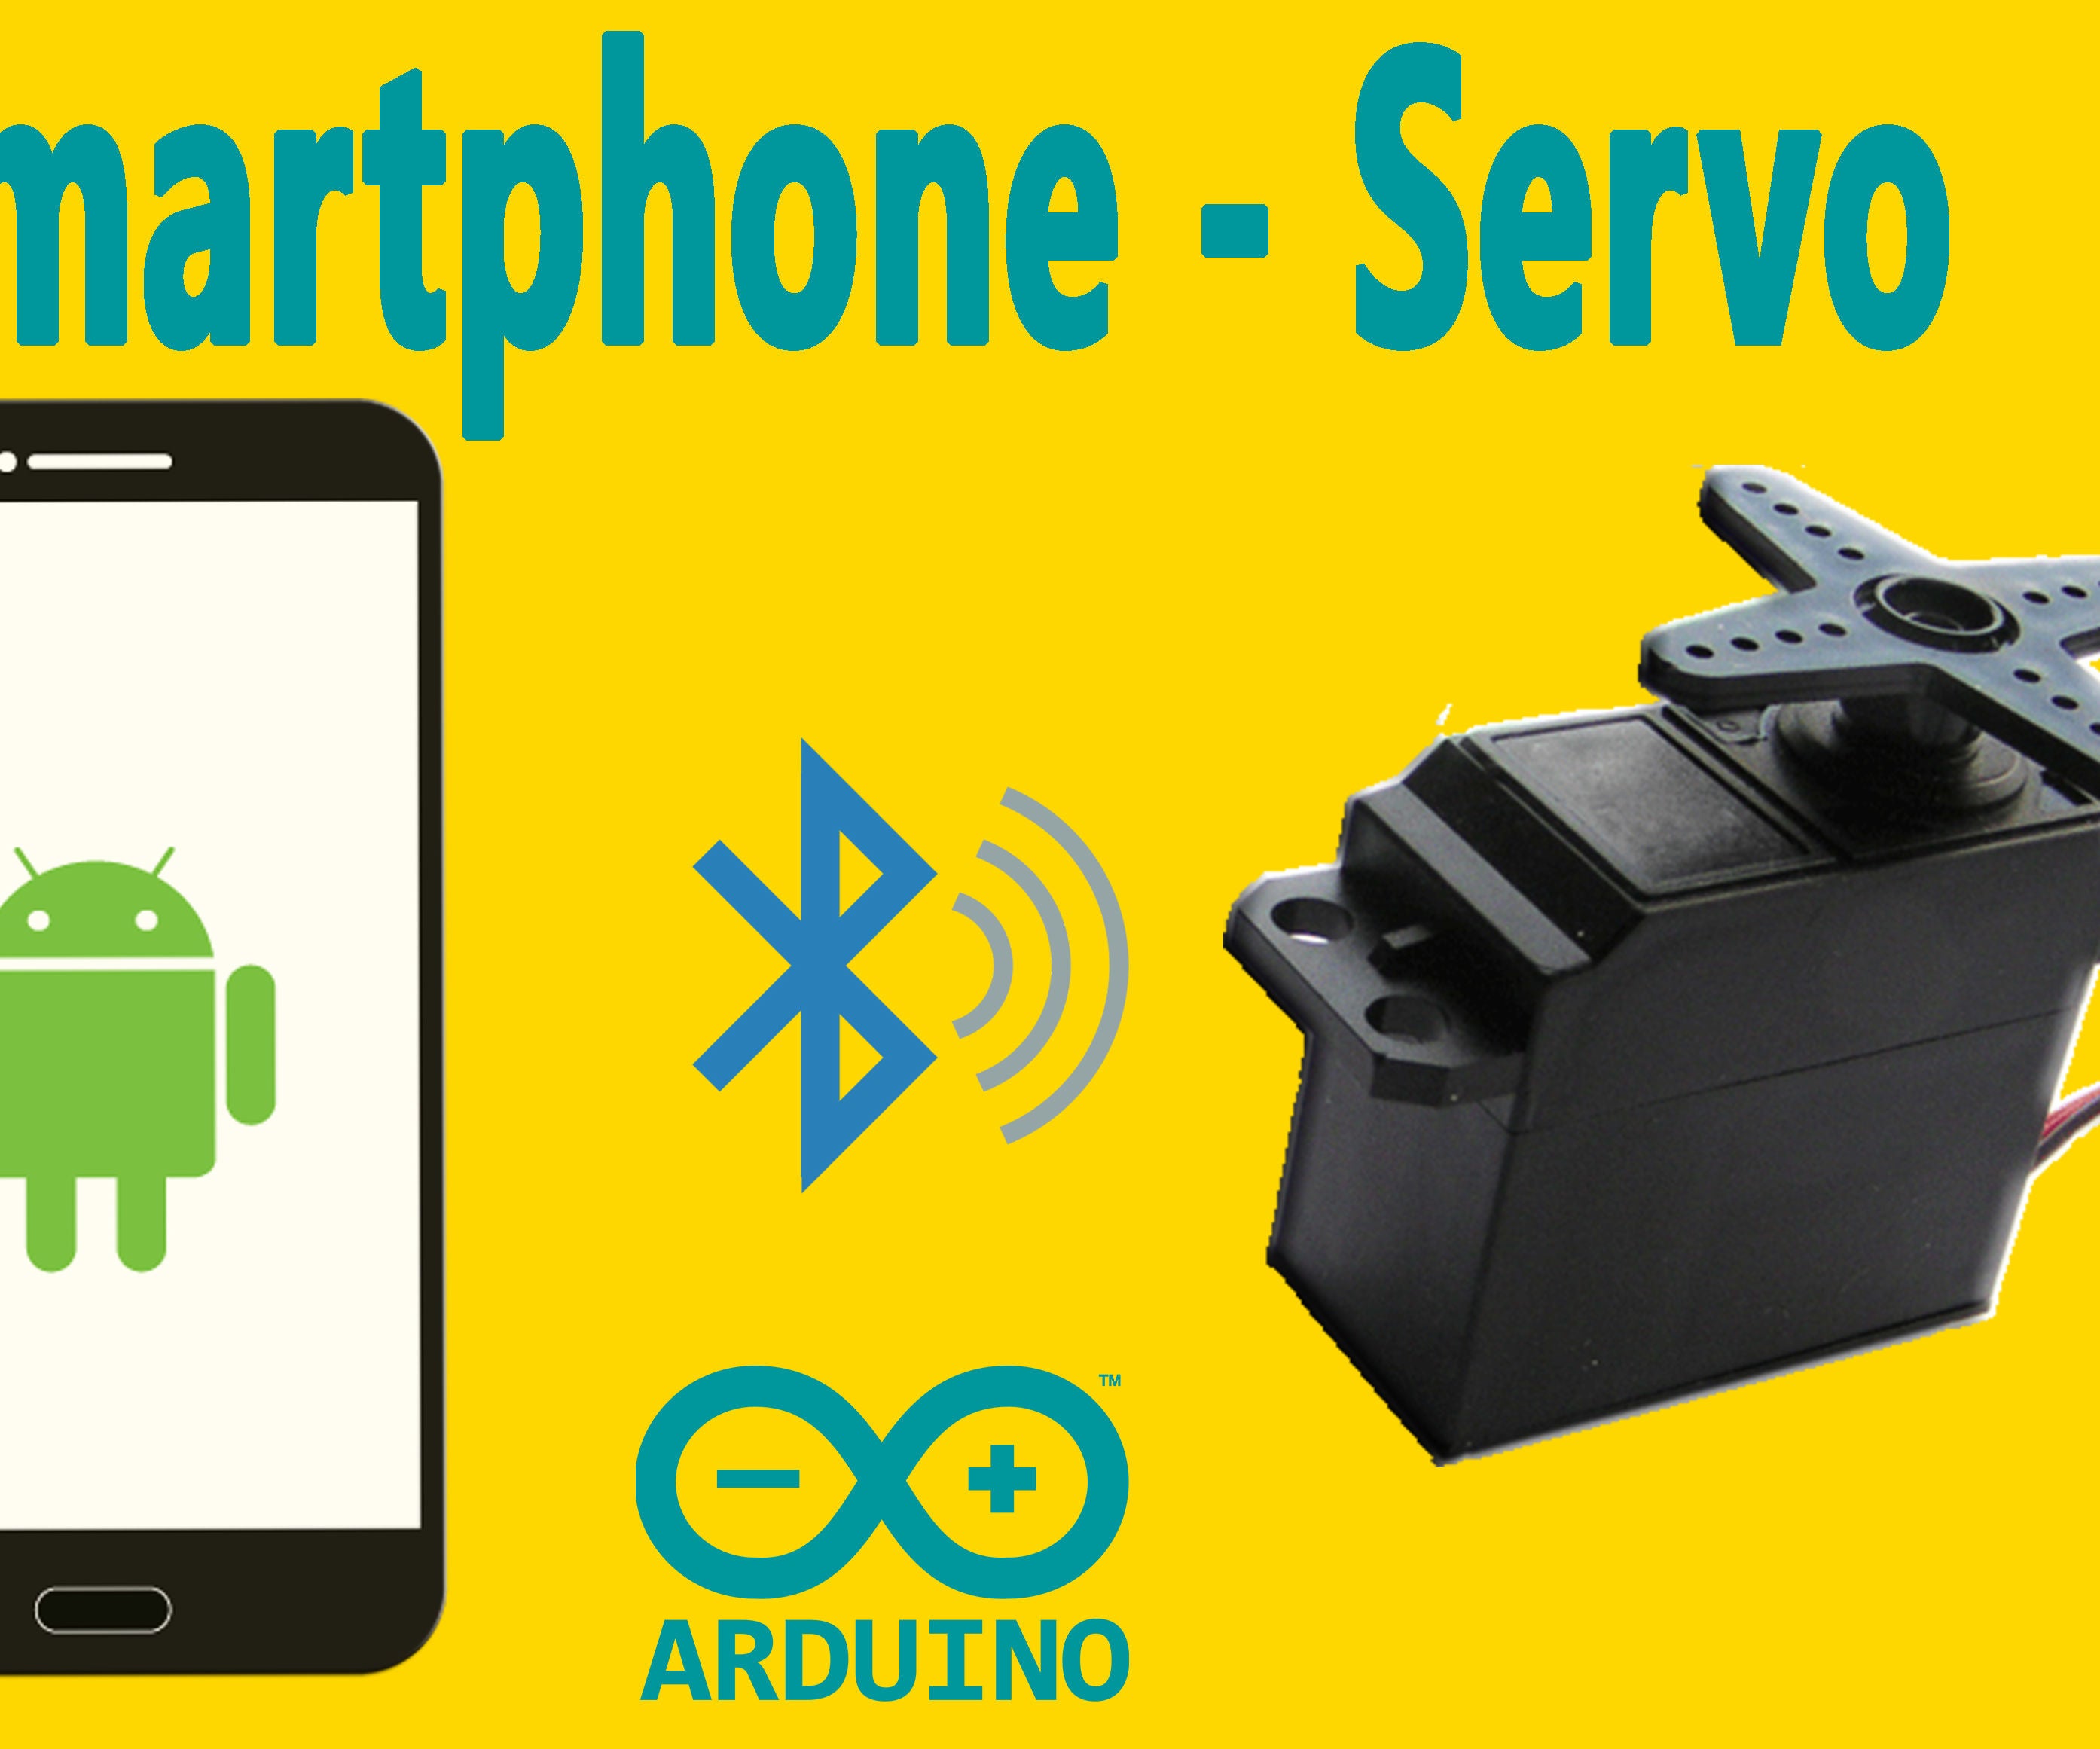 Arduino : How to Control Servo Motor Via Bluetooth (with Smartphone)